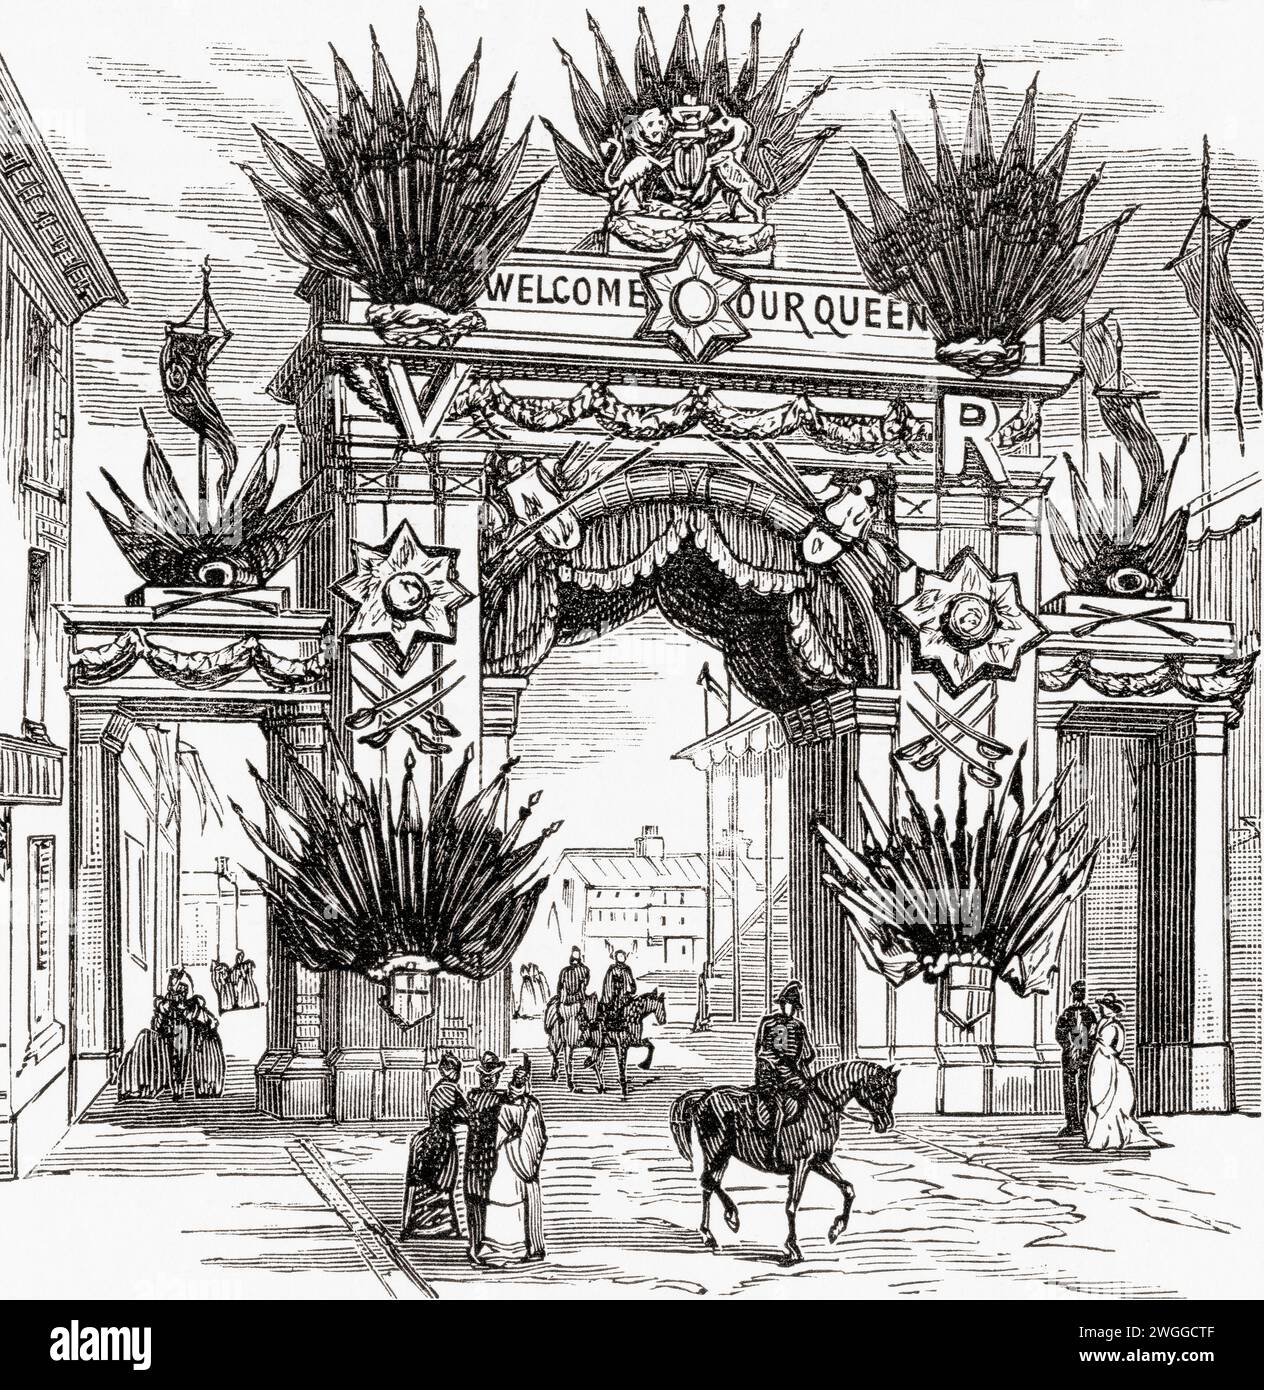 L'arche du Gunmaker, Costa Green, Birmingham, Angleterre, érigée pour marquer la visite de la reine Victoria à Birmingham le 23 mars 1887, année du Jubilé d'Or. Tiré du London Illustrated News, publié le 26 mars 1887. Banque D'Images